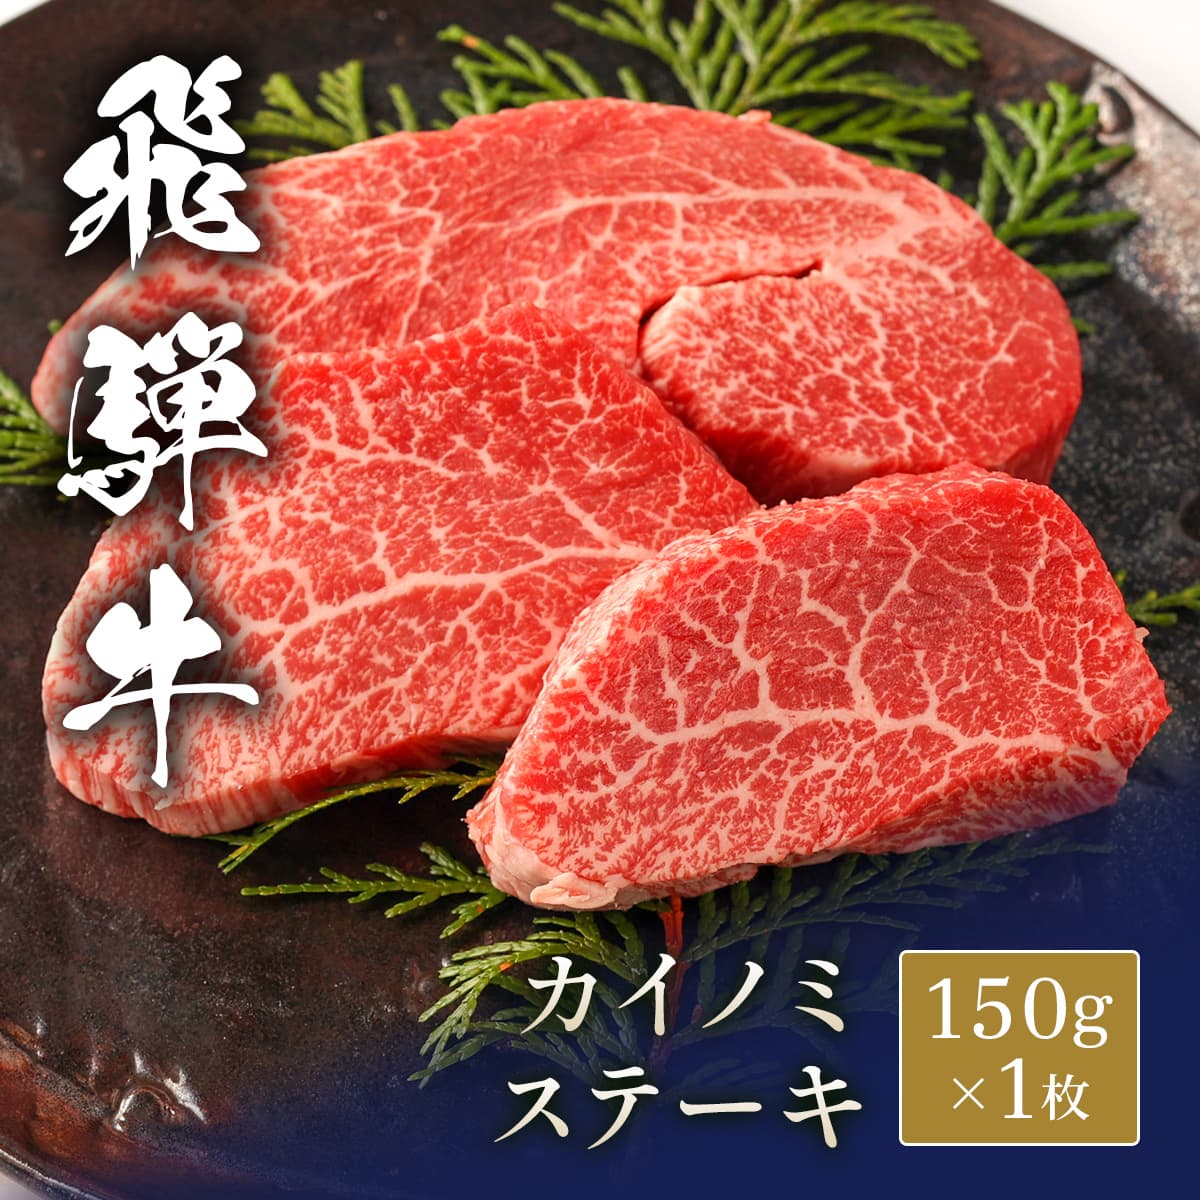 飛騨牛 ステーキ カイノミ 150g x 1枚